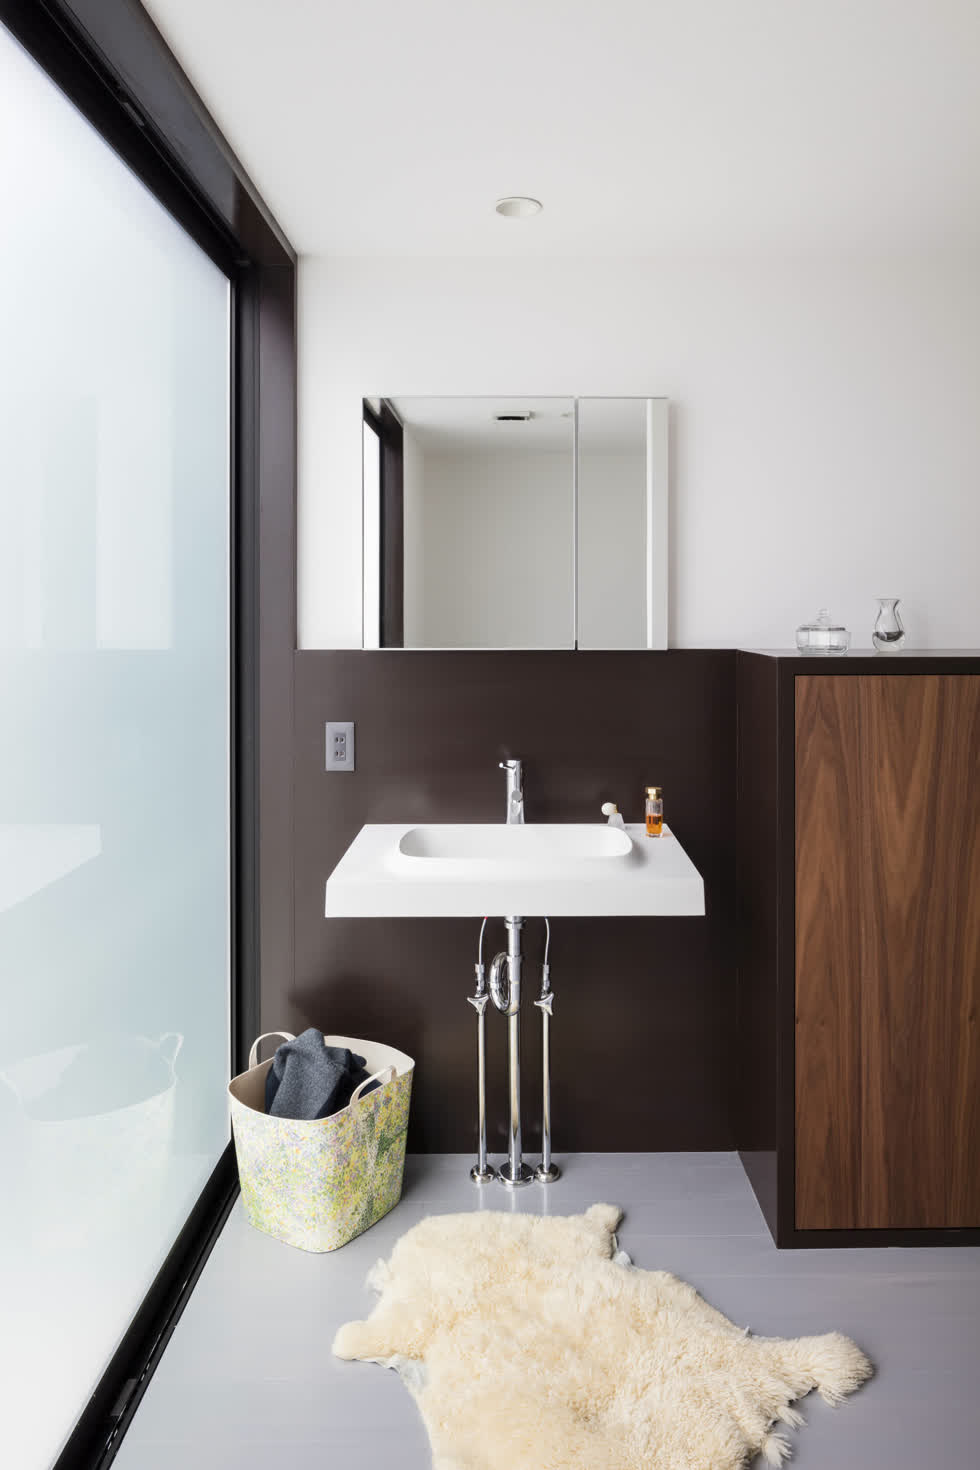 Khu vực phòng tắm không quá cầu kỳ, vẫn là gam màu nâu trầm cũng bồn rửa mắt đơn giản. Sự đơn giản trong nội thất giúp căn nhà trở nên gọn gàng, ngăn nắp và thông thoáng hơn.